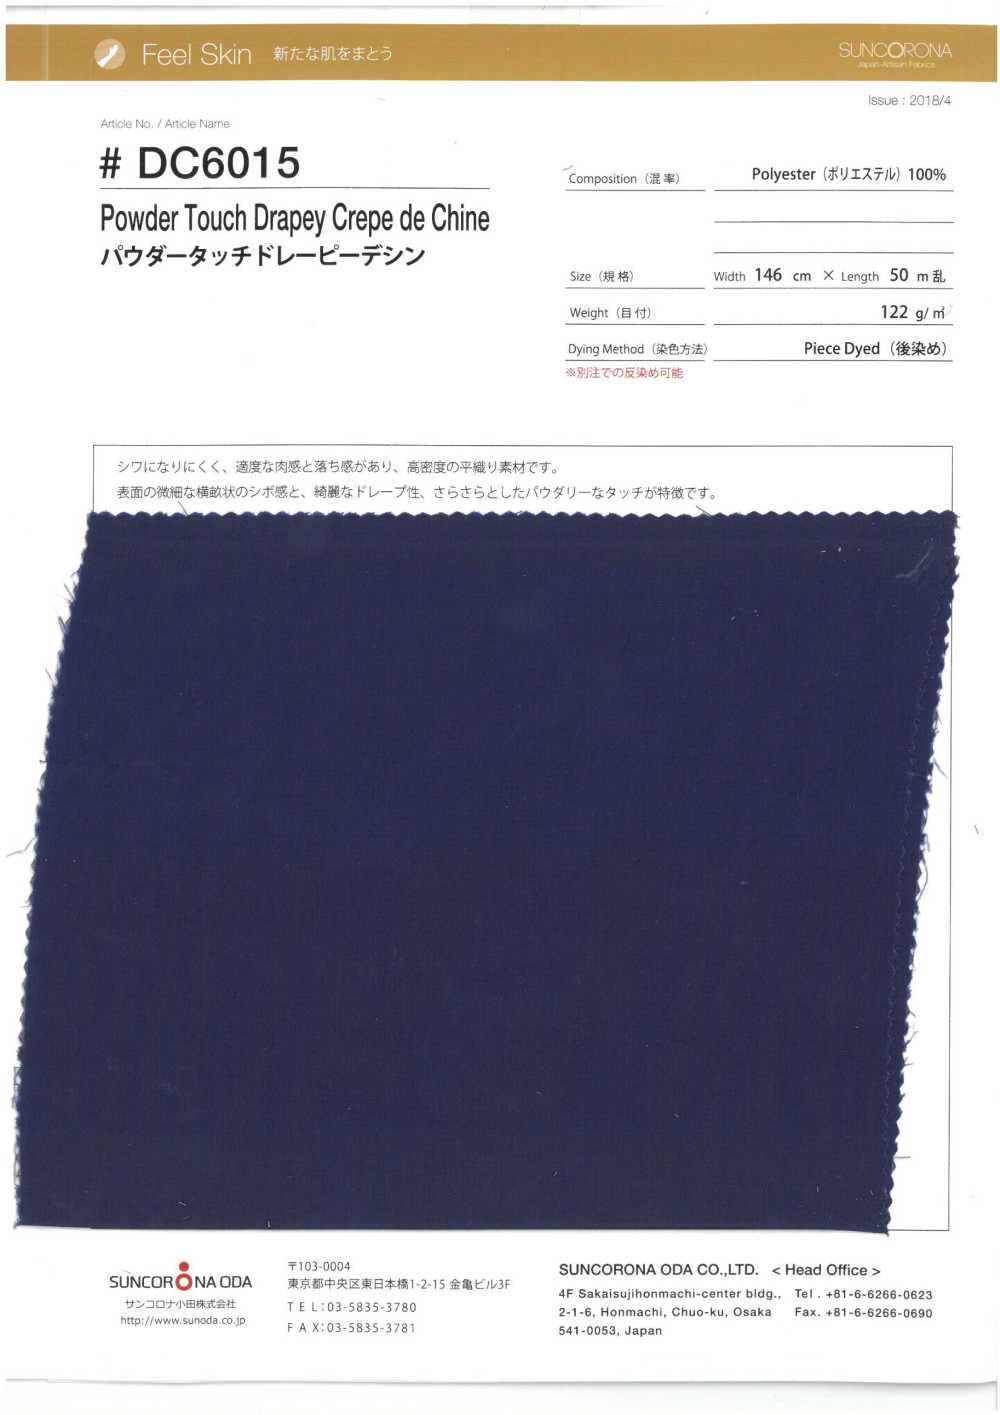 DC6015 Drapey Elástico Em Pó Da China[Têxtil / Tecido] Suncorona Oda